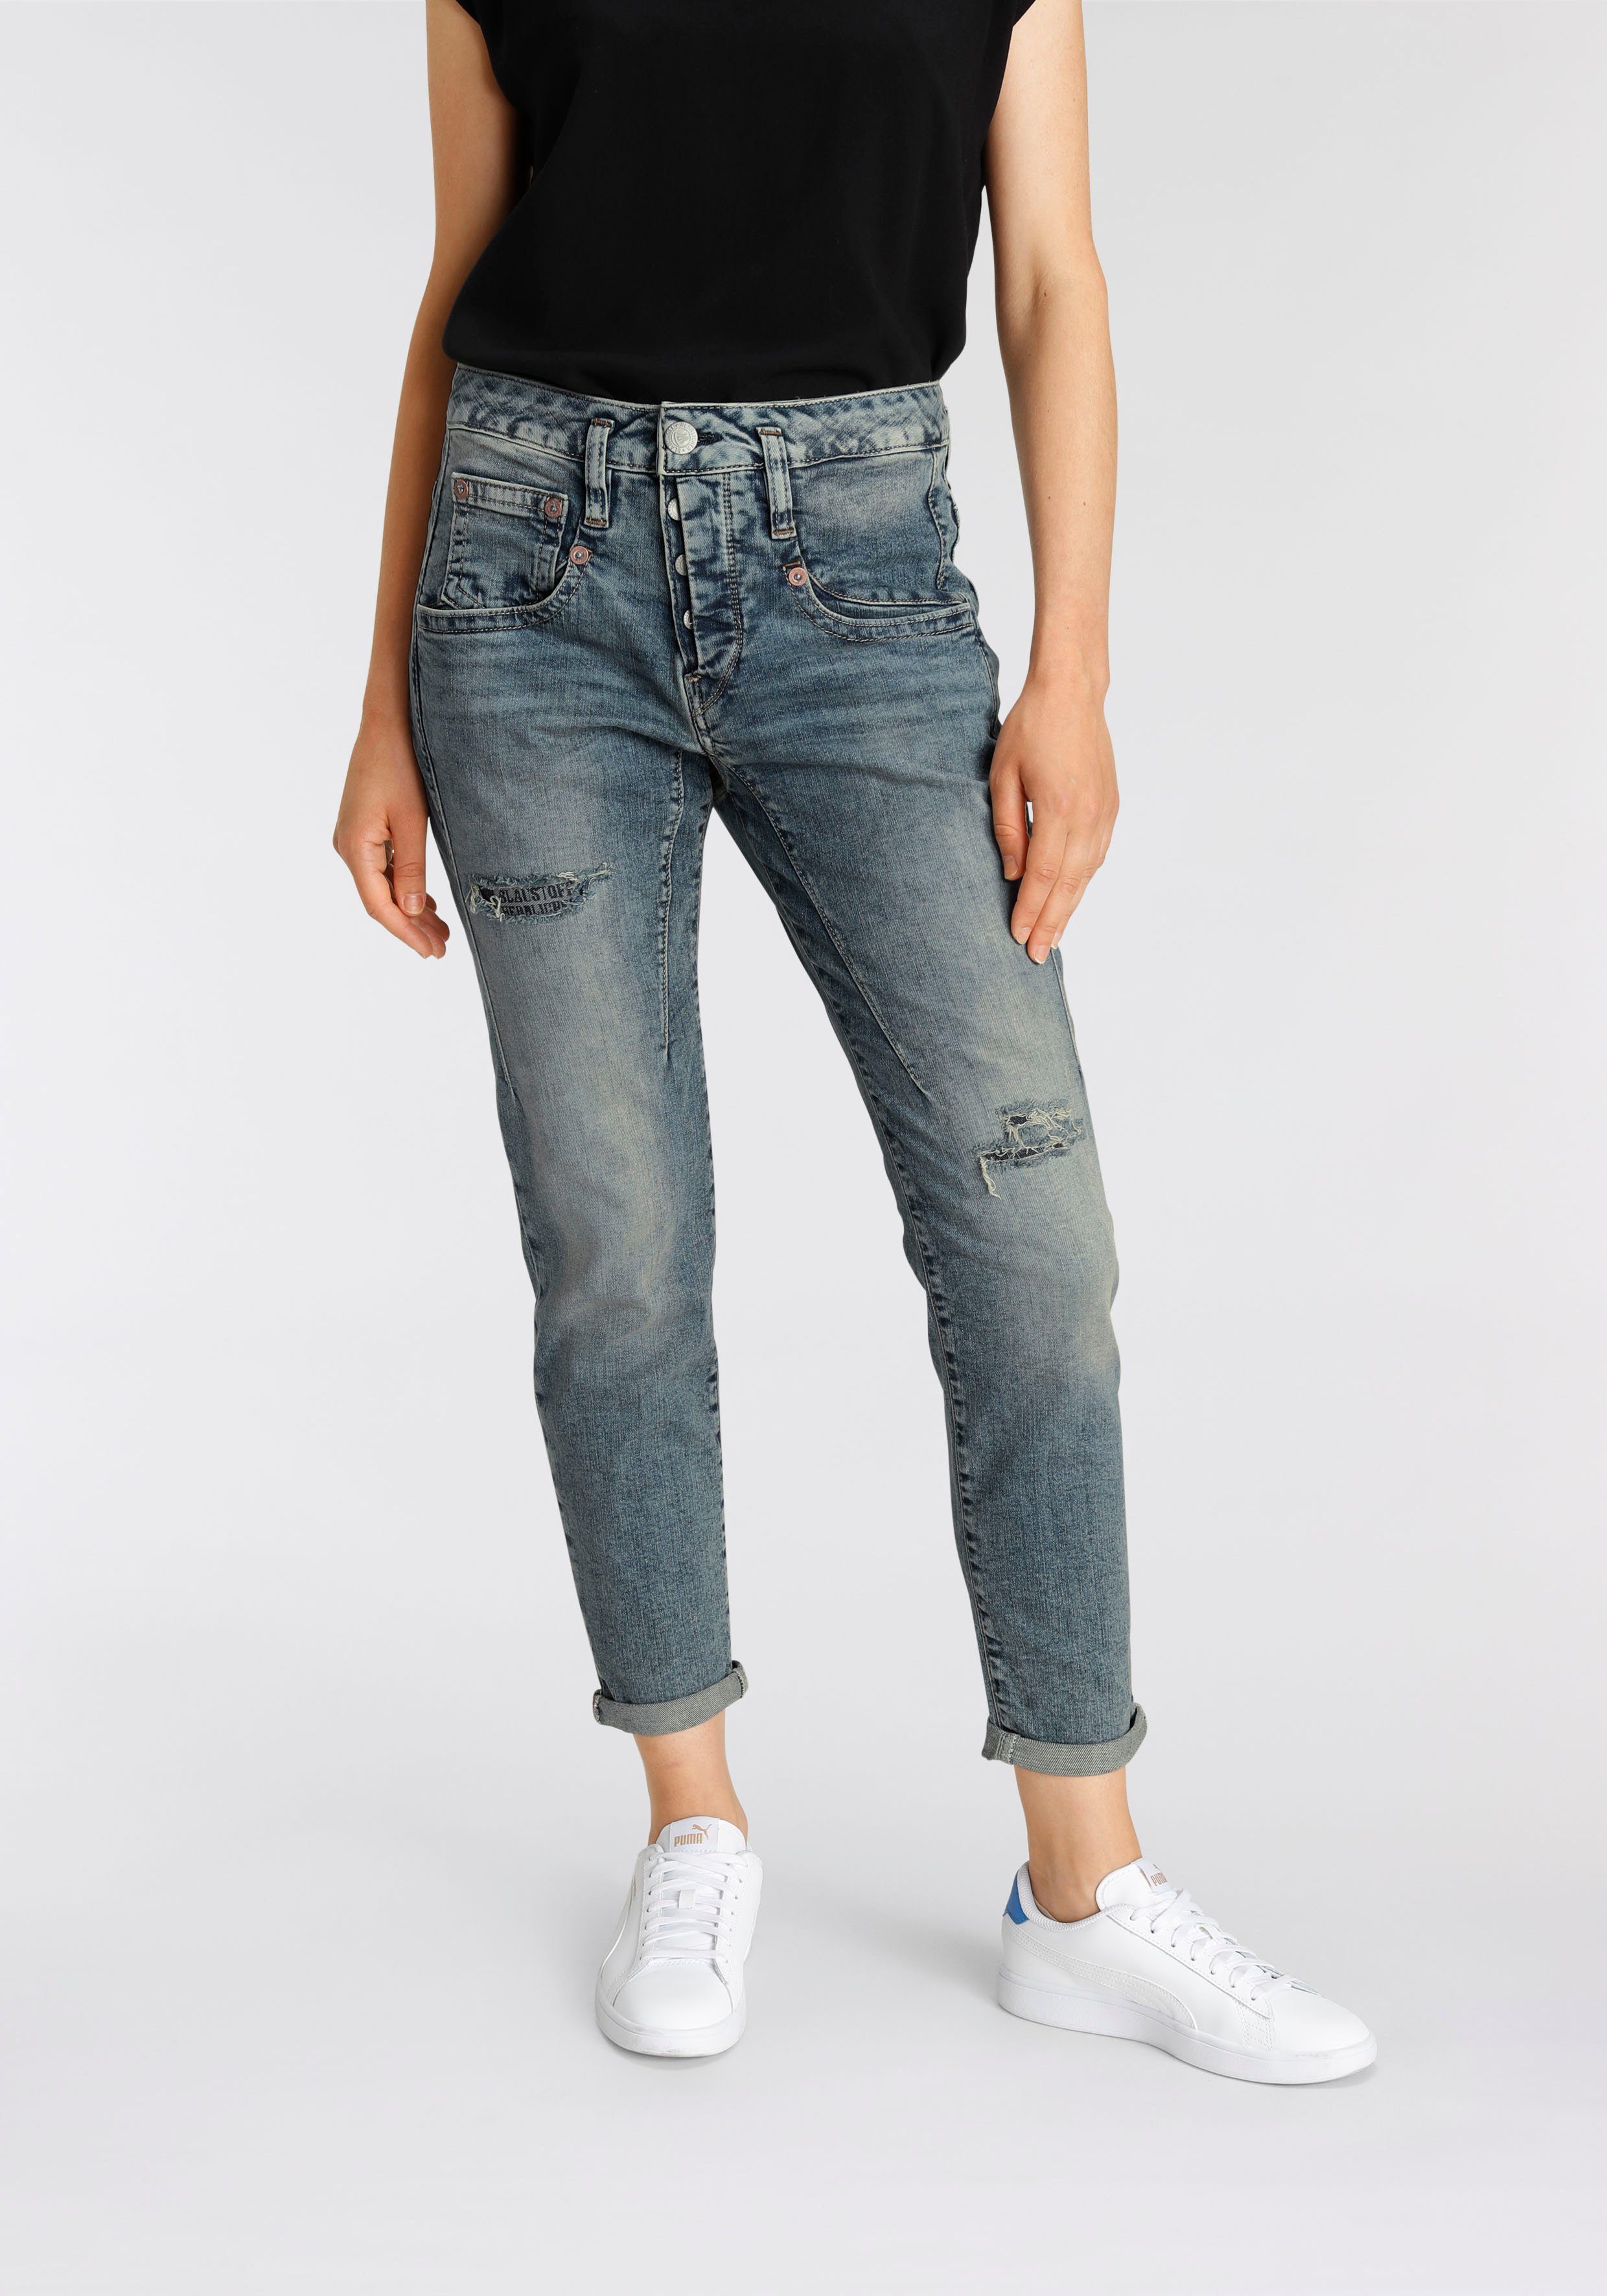 Ankle-Jeans für Damen kaufen » knöchelfreie Jeans | OTTO